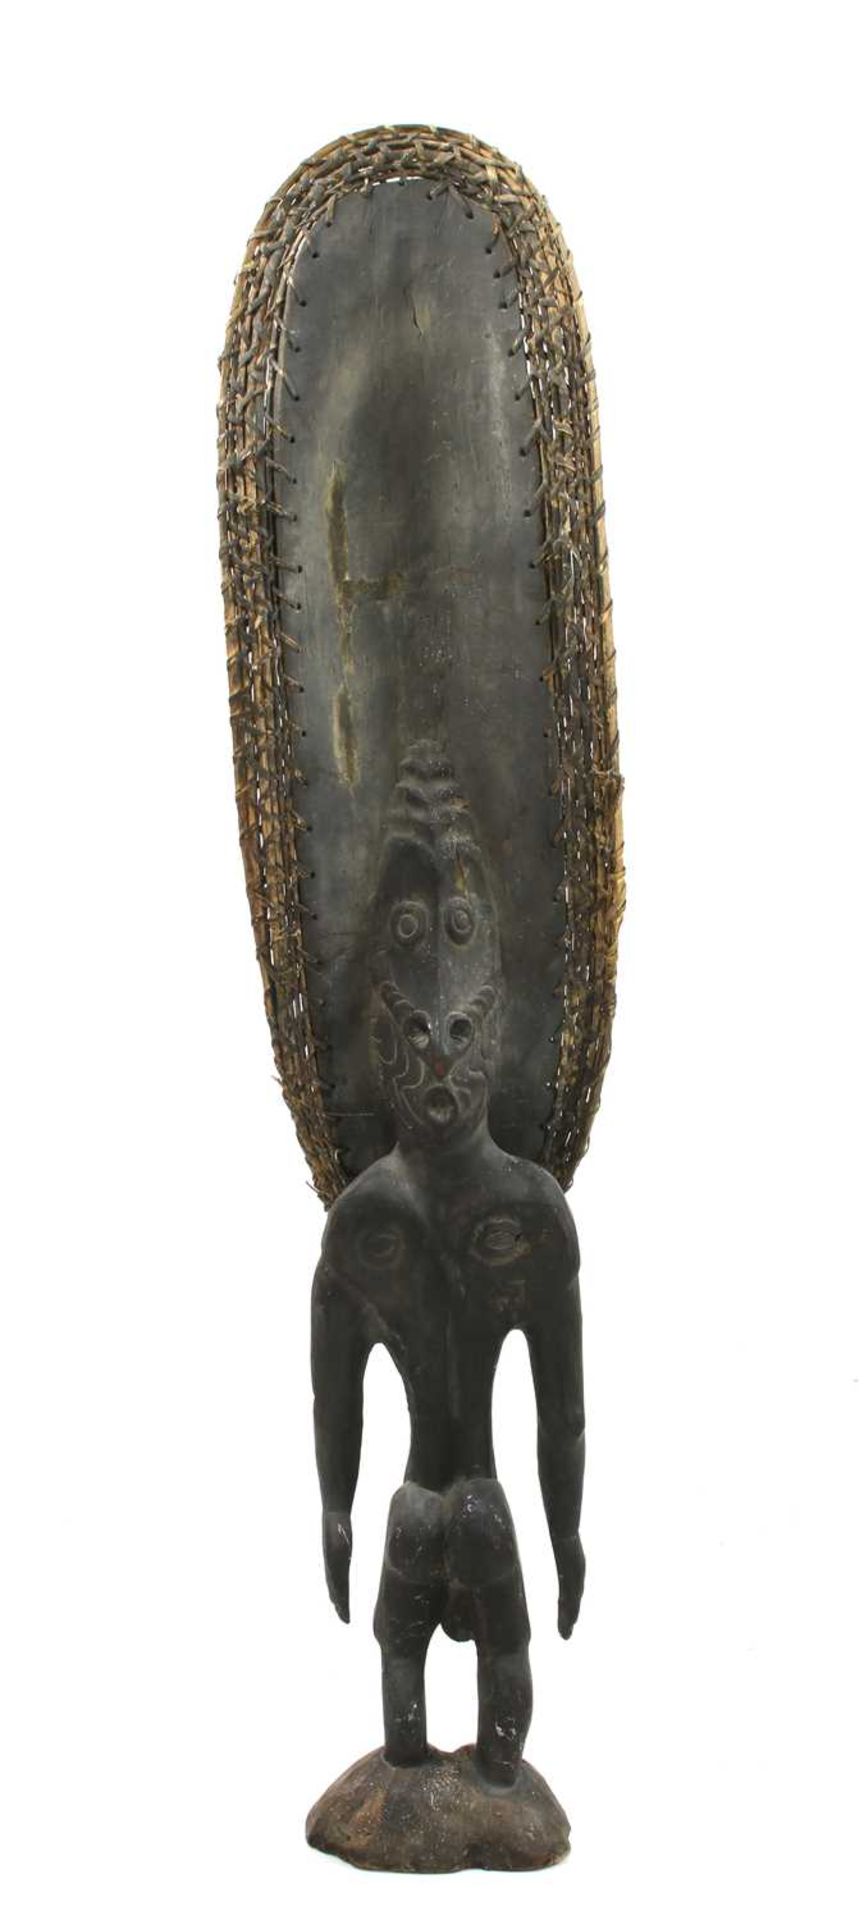 A Sepik River carved tribal ancestor figure, - Image 3 of 25